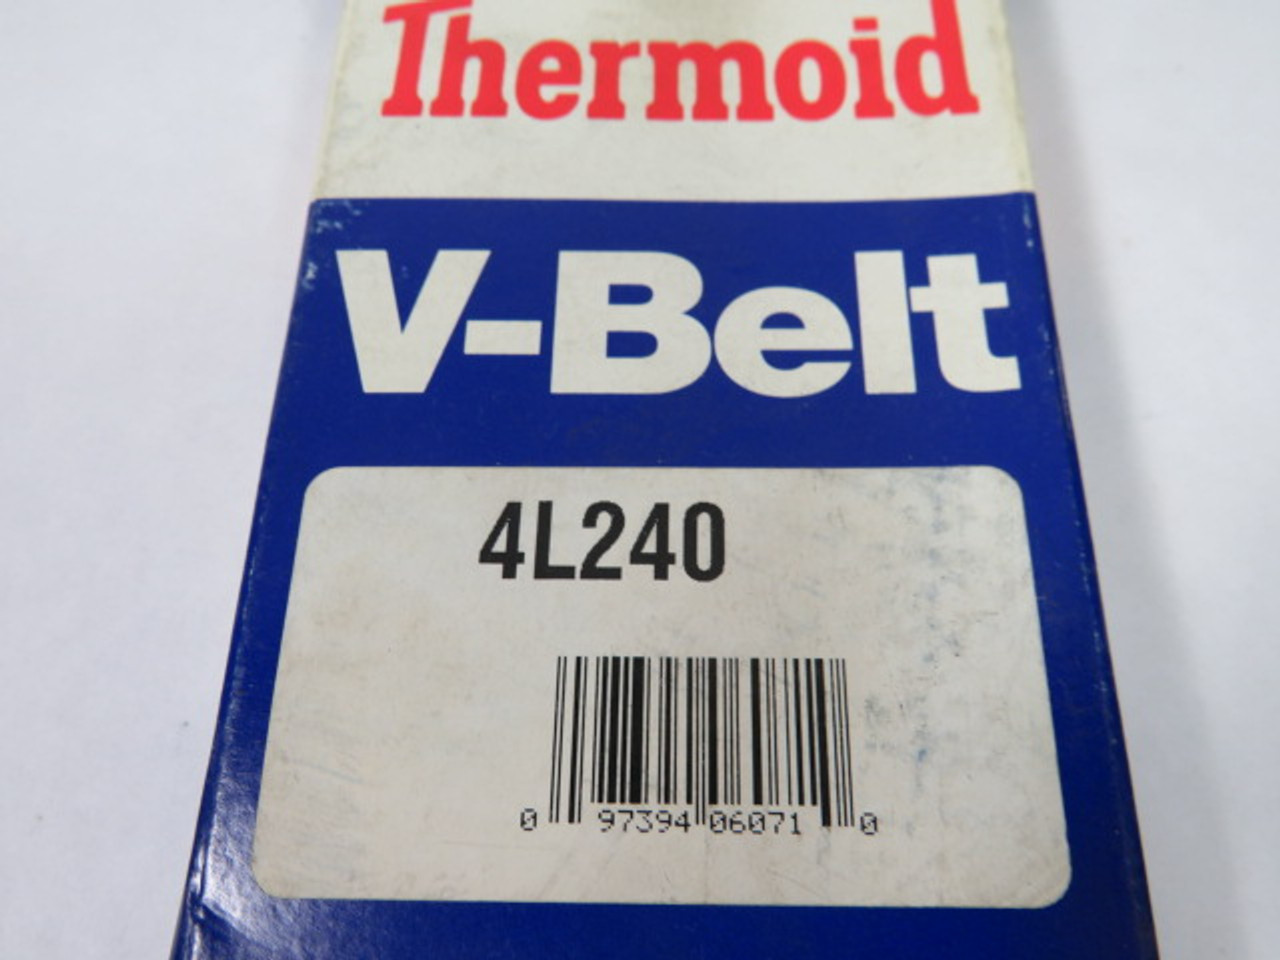 Thermoid 4L240 V-Belt 24" X 1/2" ! NEW !